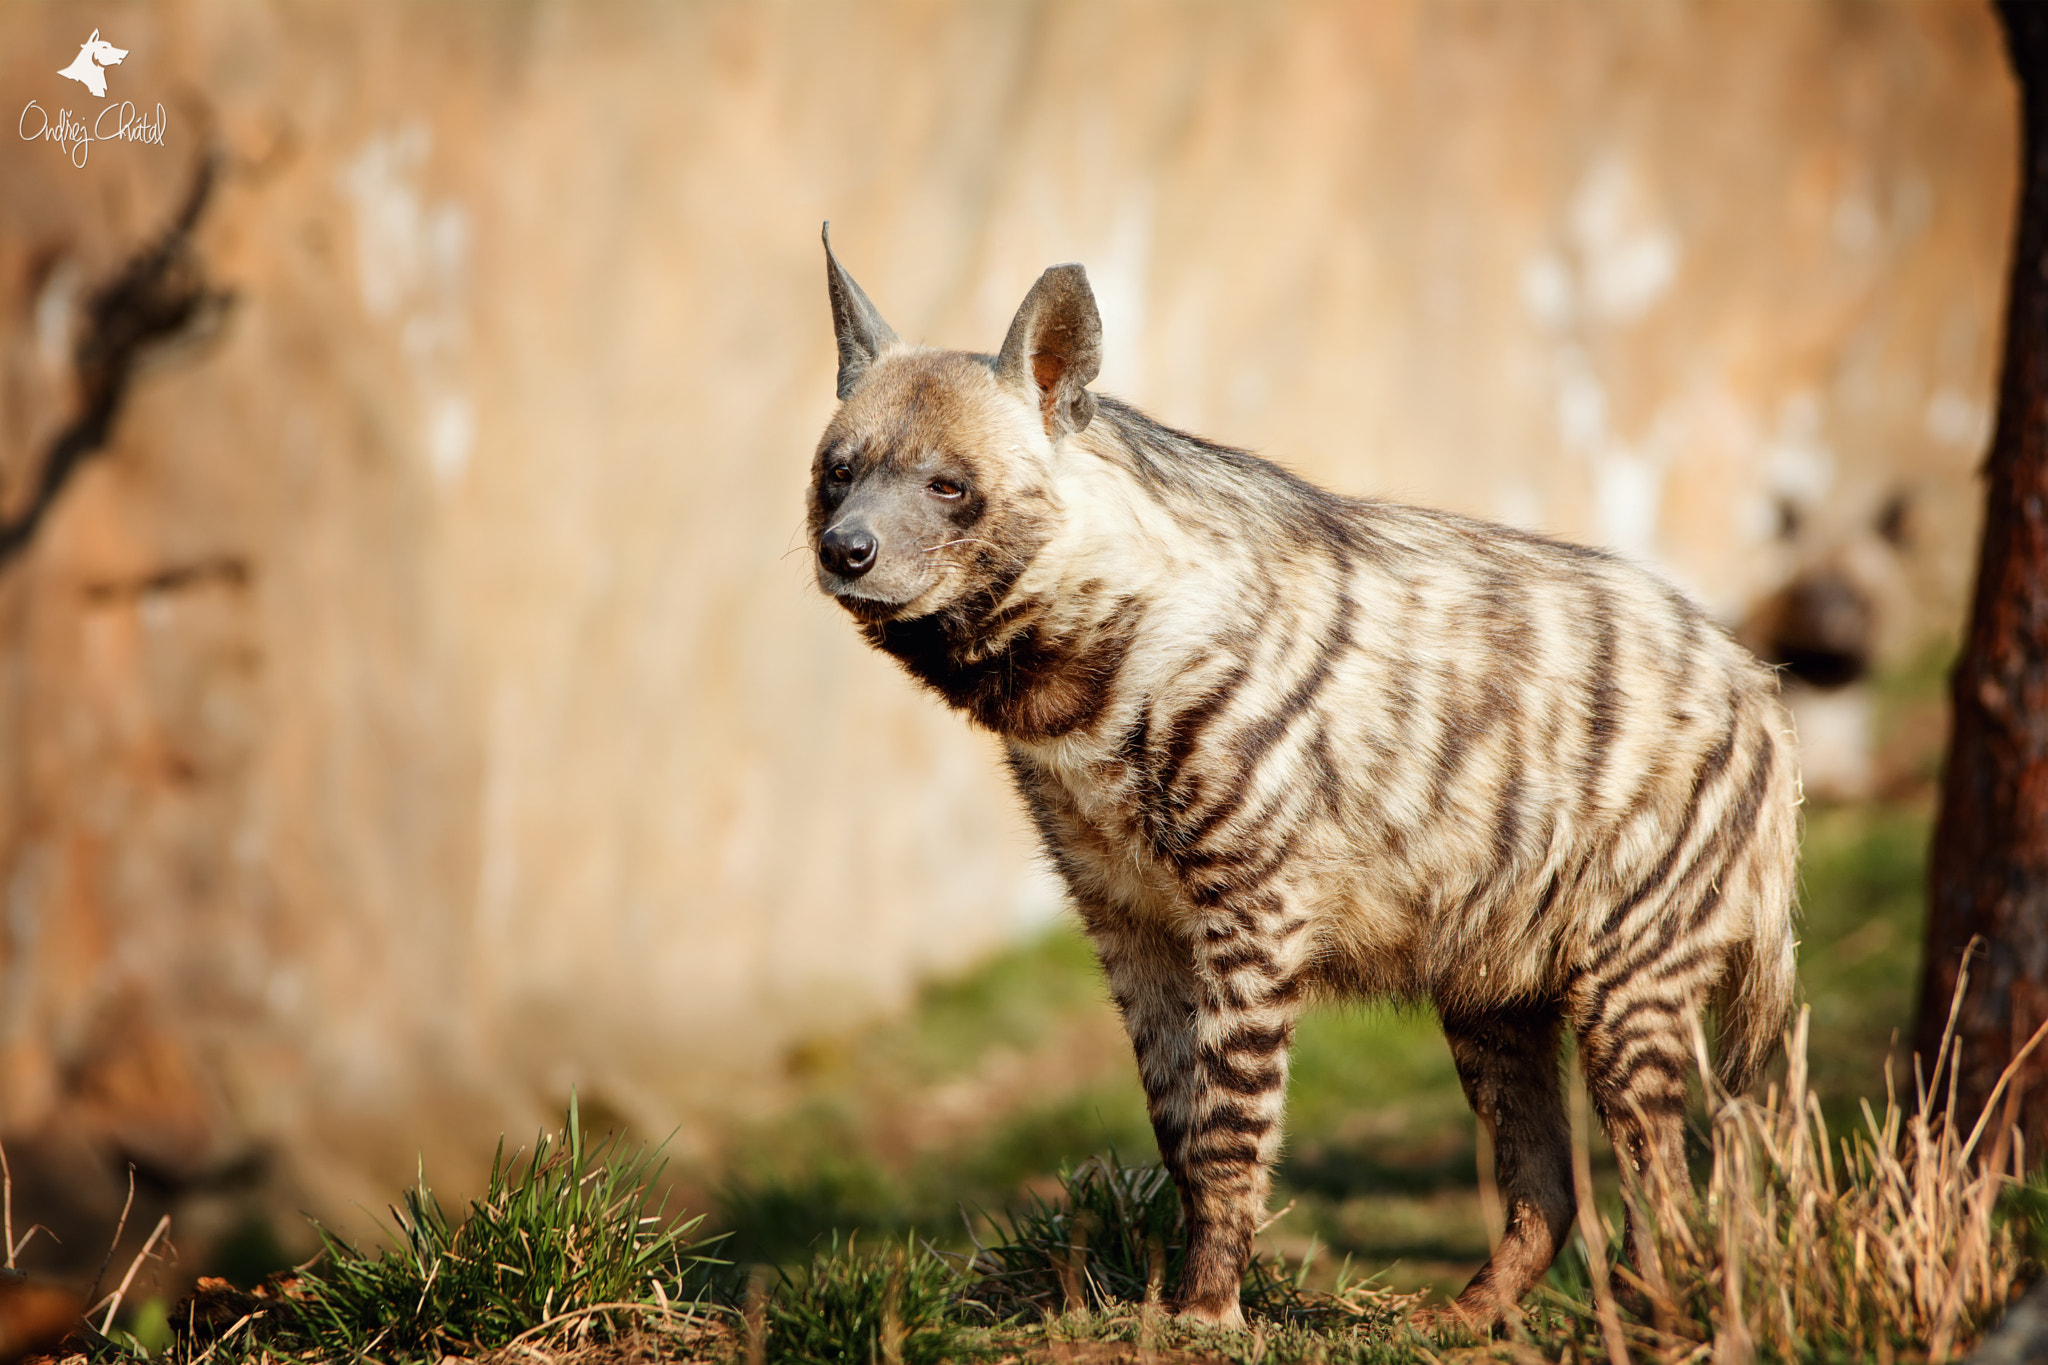 70.00 - 200.00 mm f/2.8 sample photo. Striped hyena (hyaena hyaena) photography